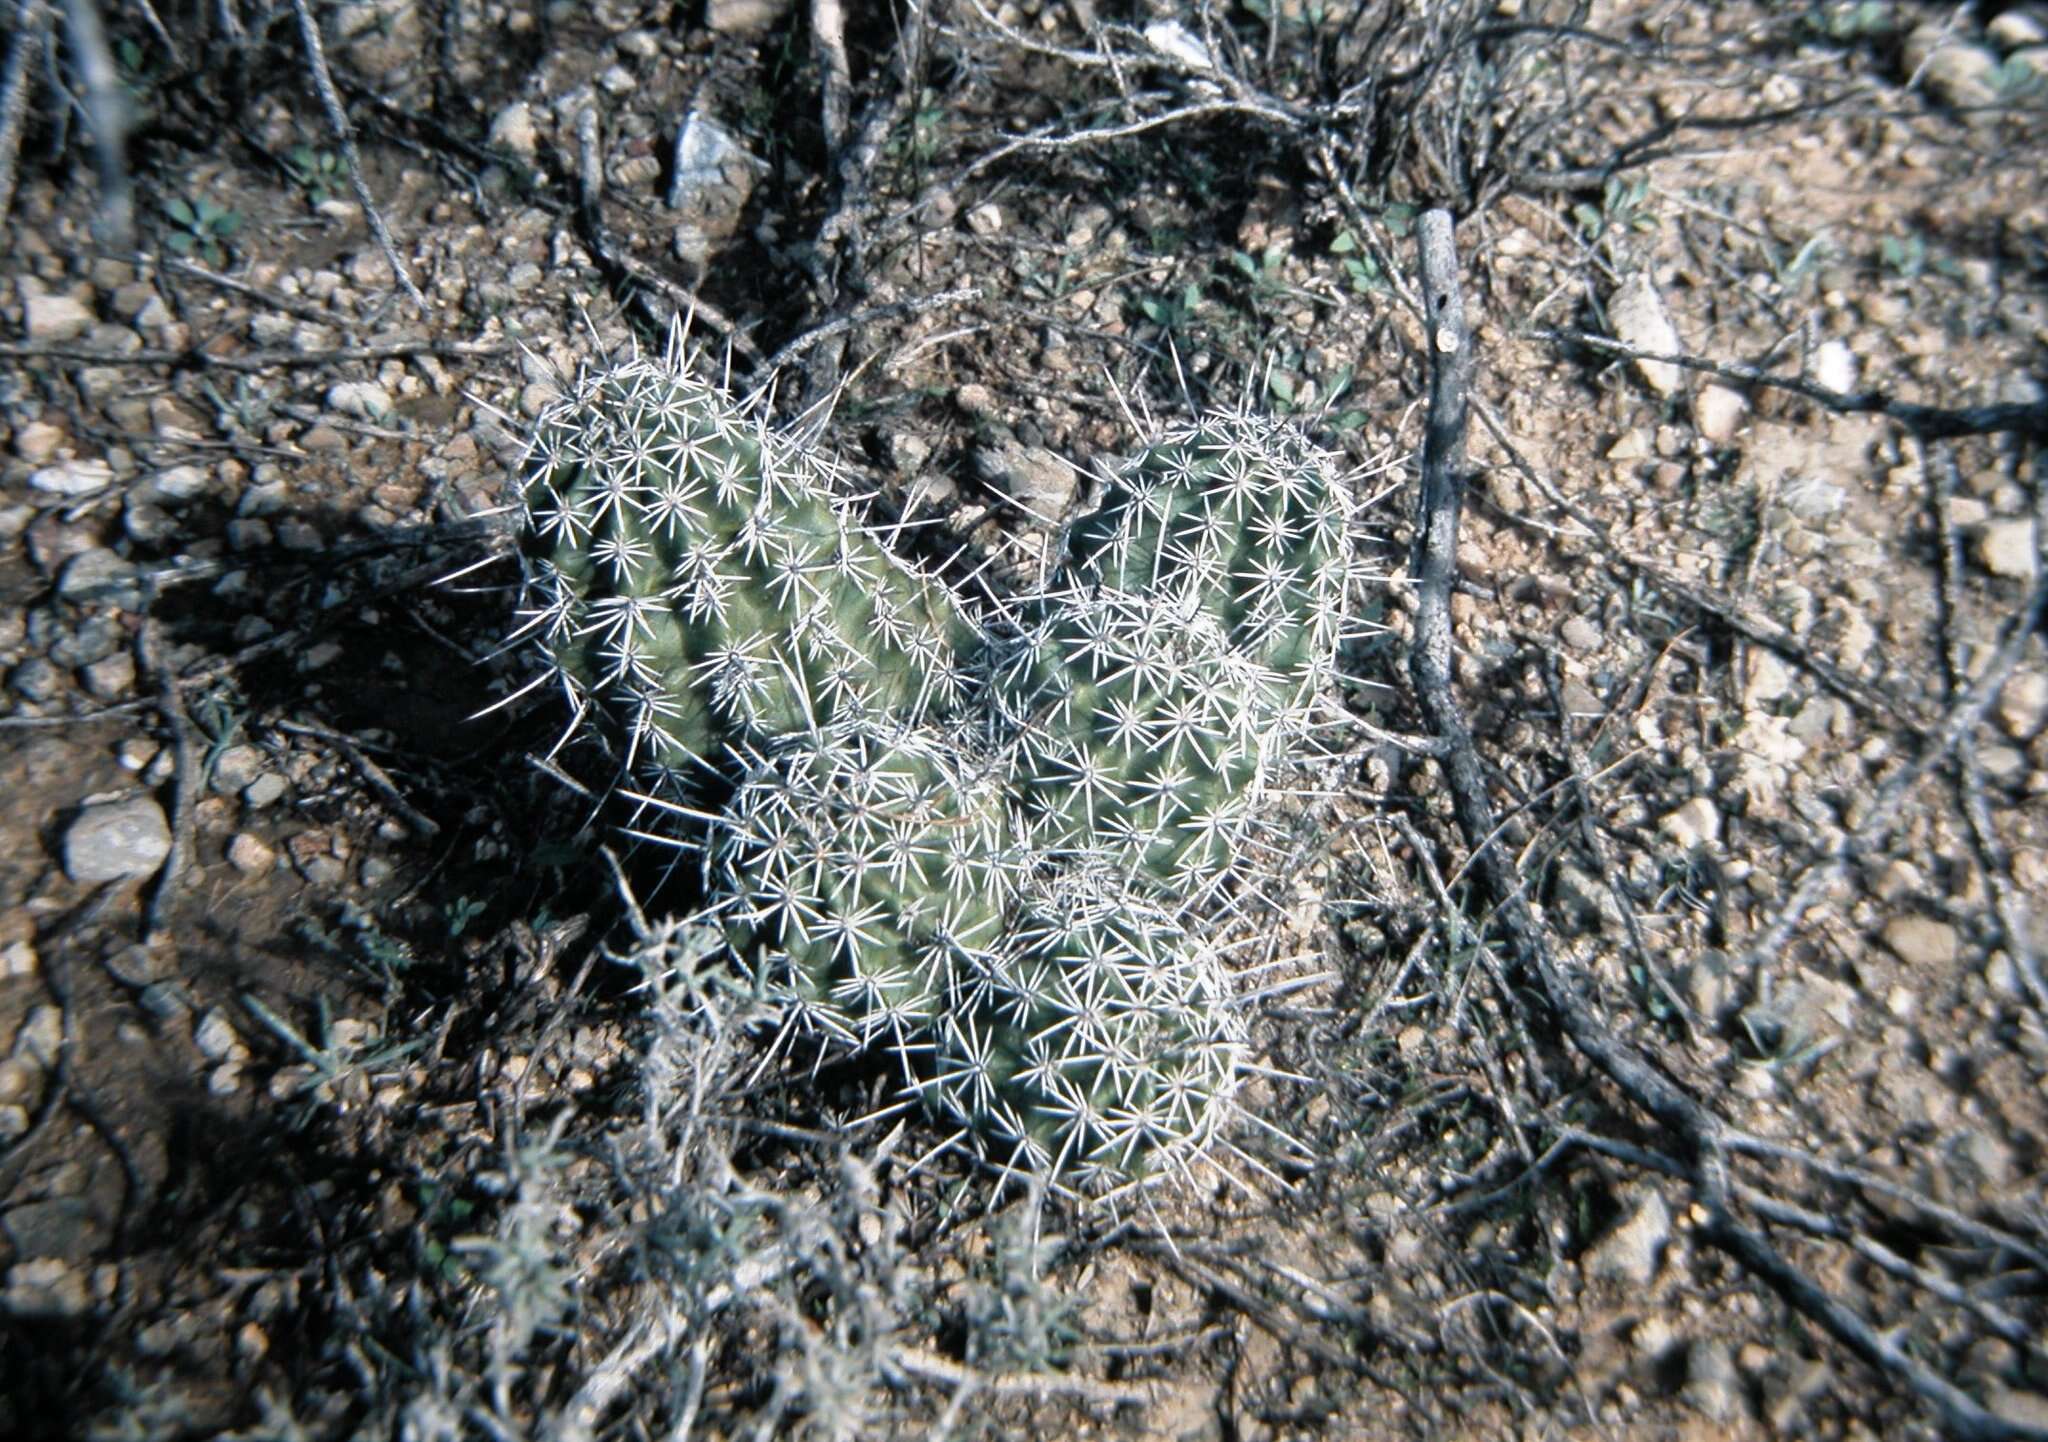 Image of pinkflower hedgehog cactus